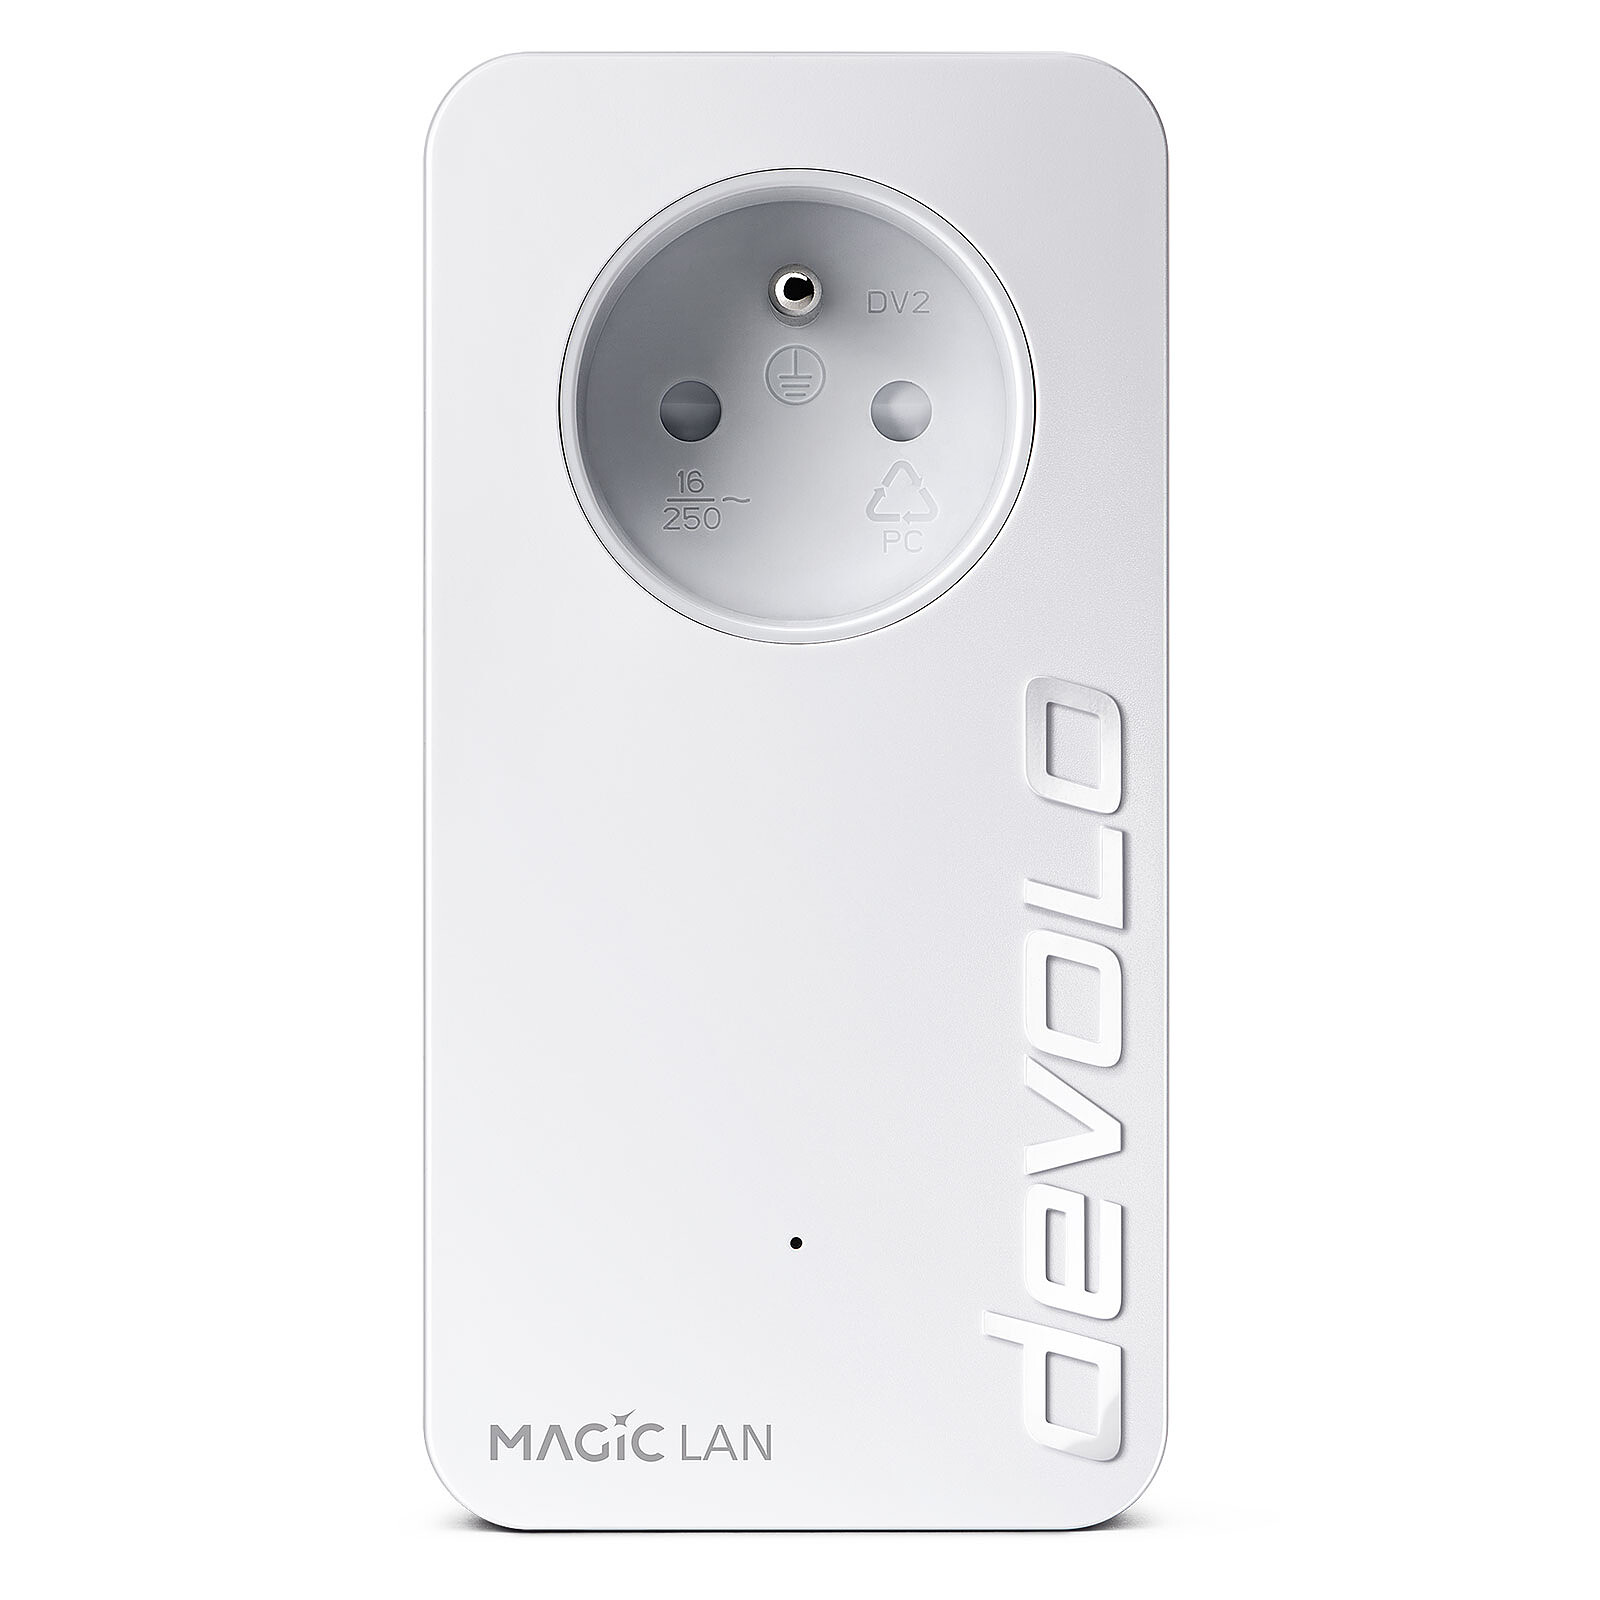 devolo Magic 2 LAN - Powerline adapter - LDLC 3-year warranty